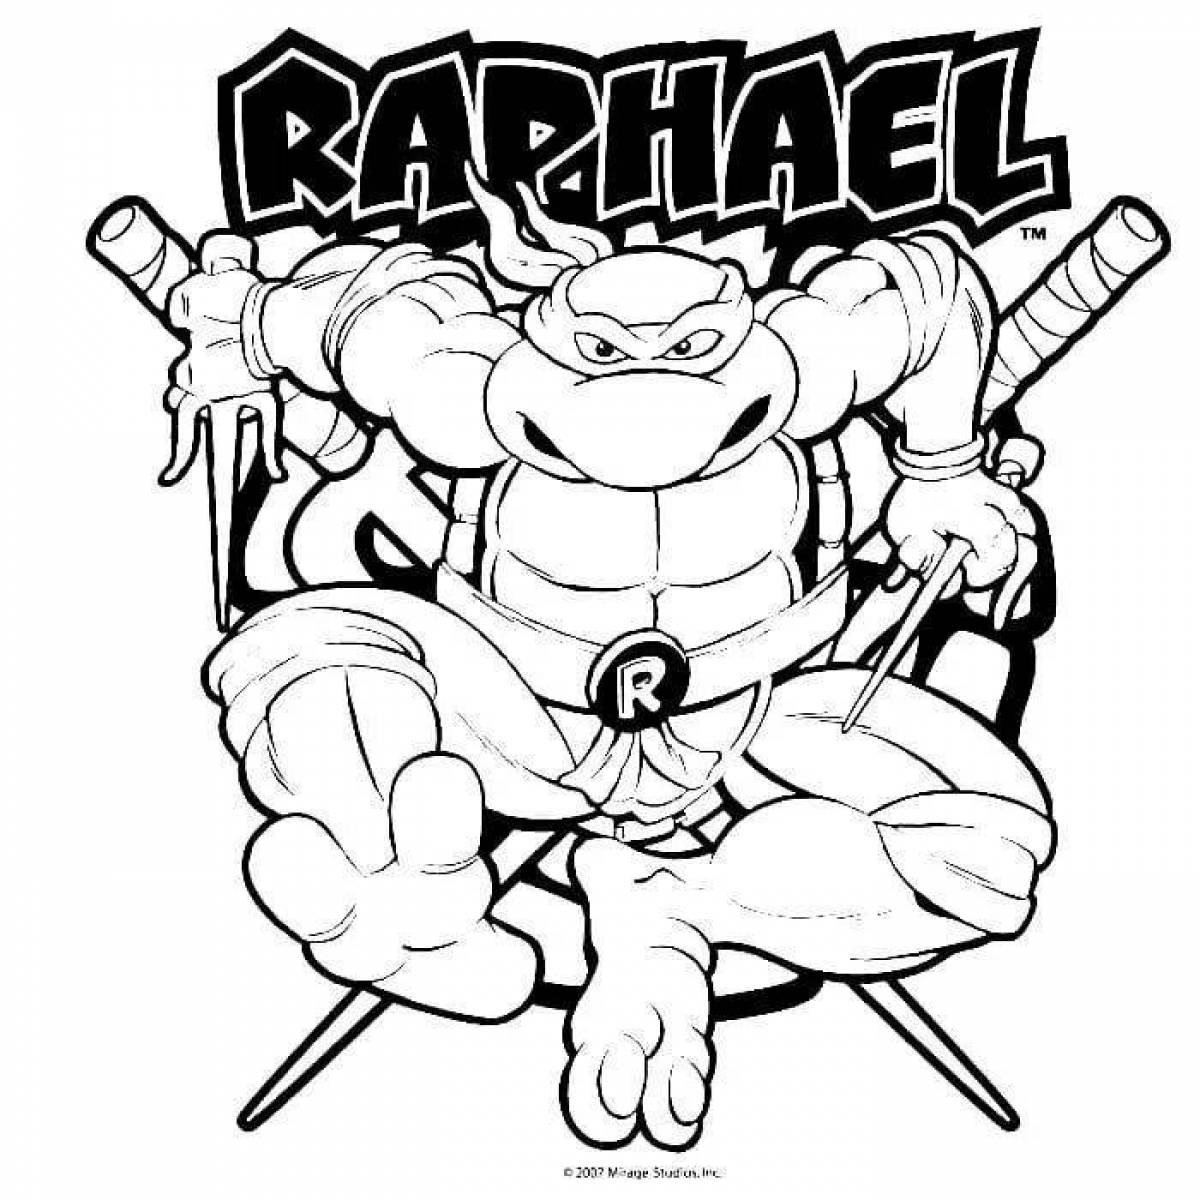 Raphael's hilarious Teenage Mutant Ninja Turtles